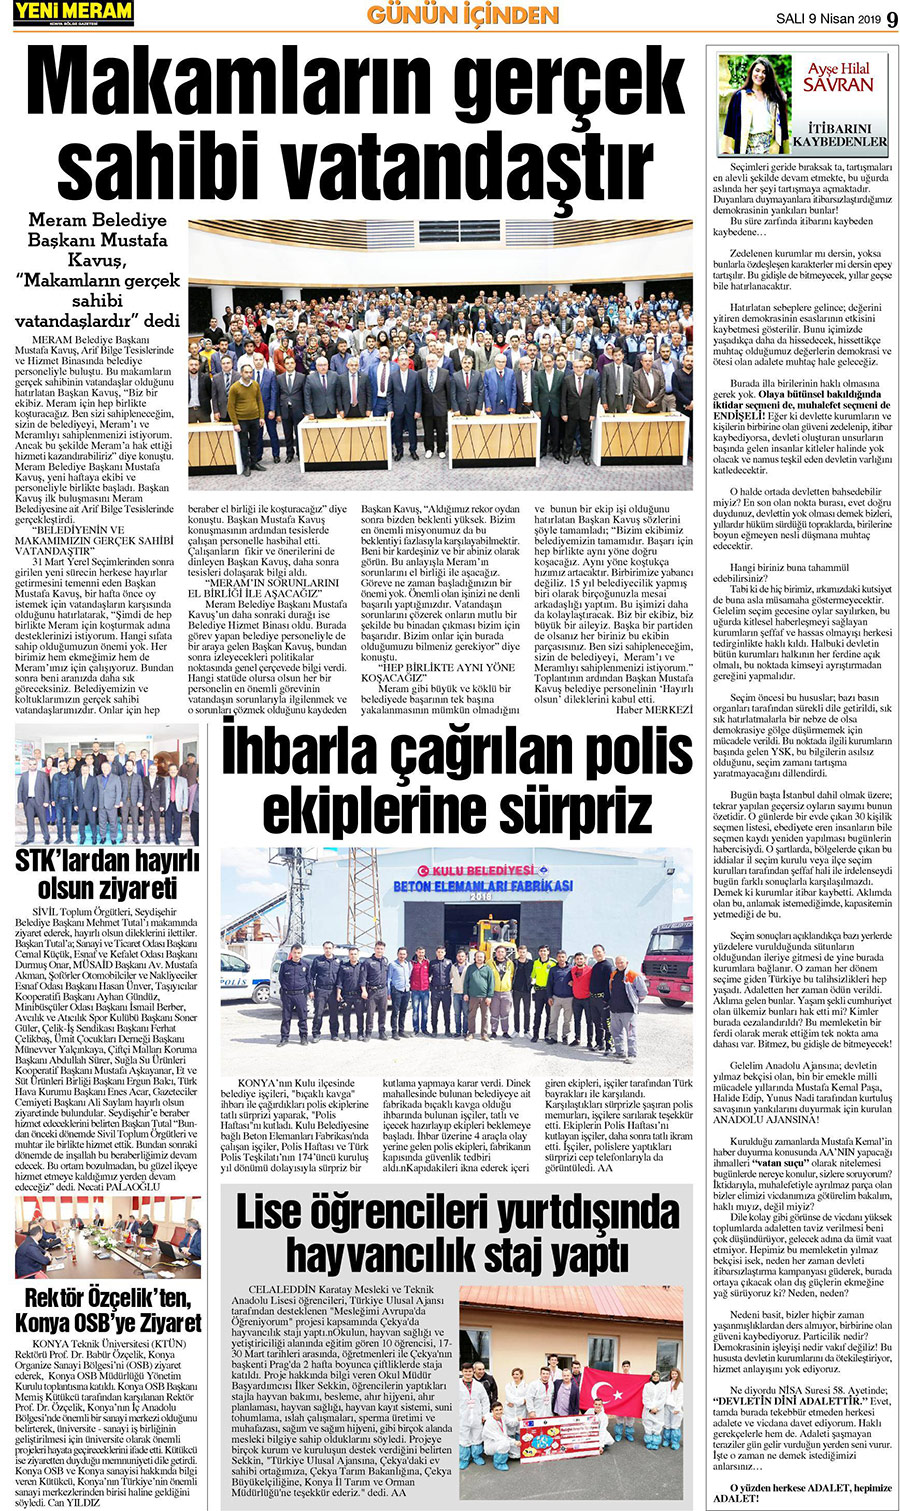 9 Nisan 2019 Yeni Meram Gazetesi